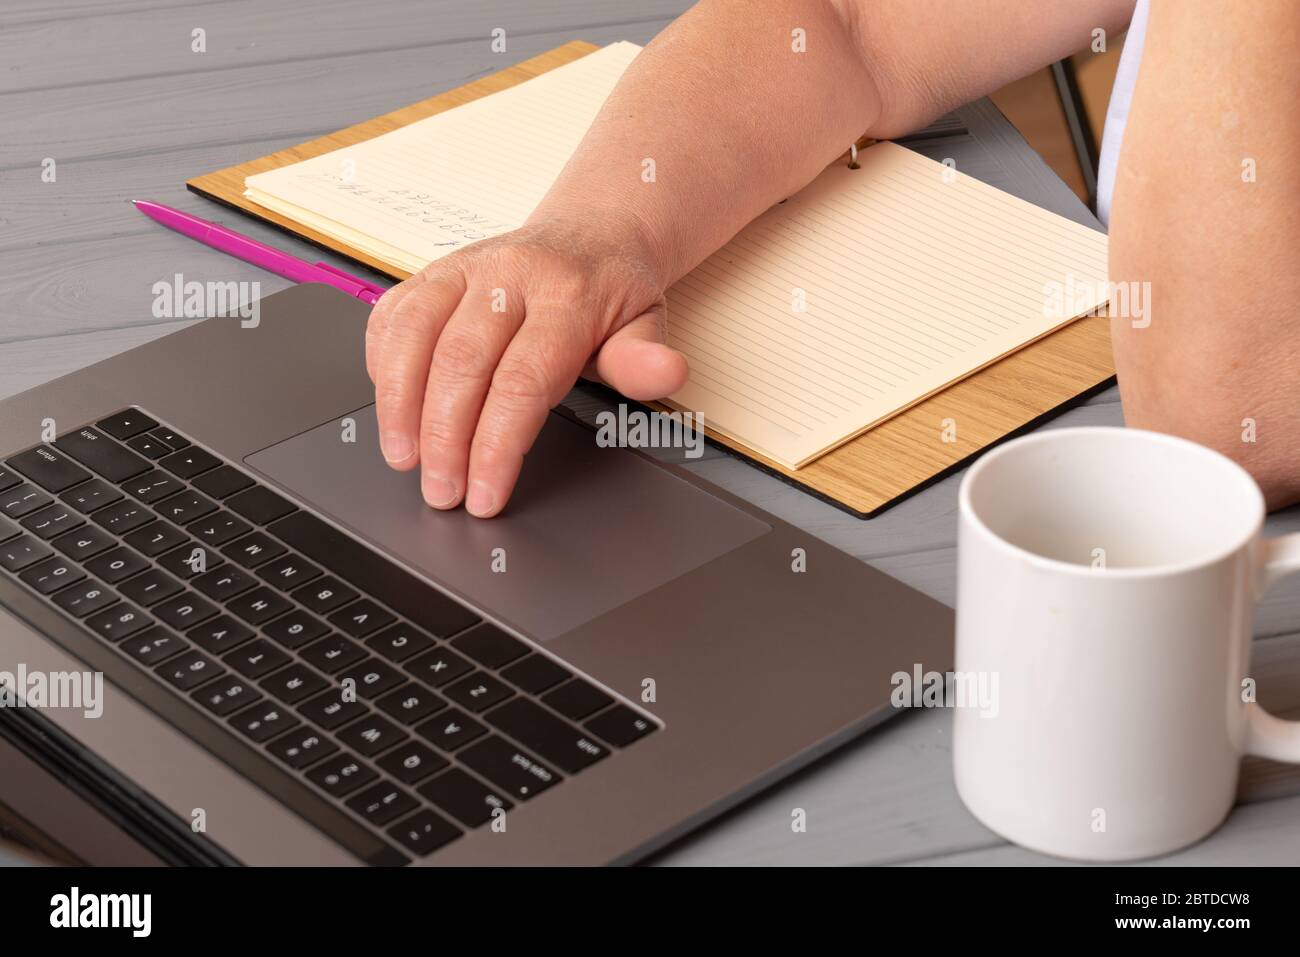 Travail à domicile pour la distanciation sociale dans la situation de coronavirus Covid-19, femme Designer utilisant un ordinateur portable sur table à son domicile Banque D'Images